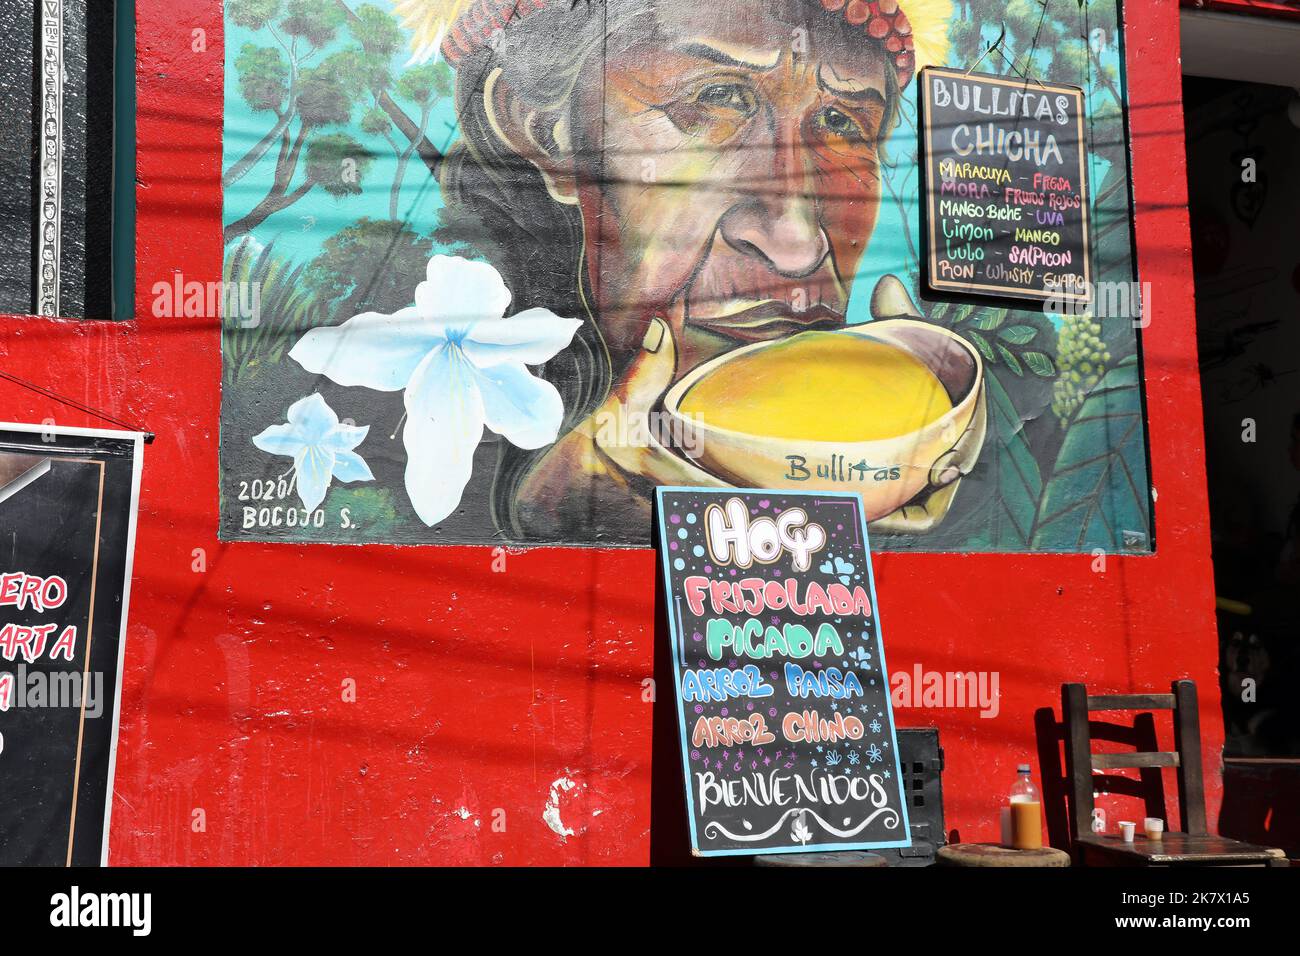 Mural de una mujer bebiendo chicha tradicional en Bogotá Foto de stock